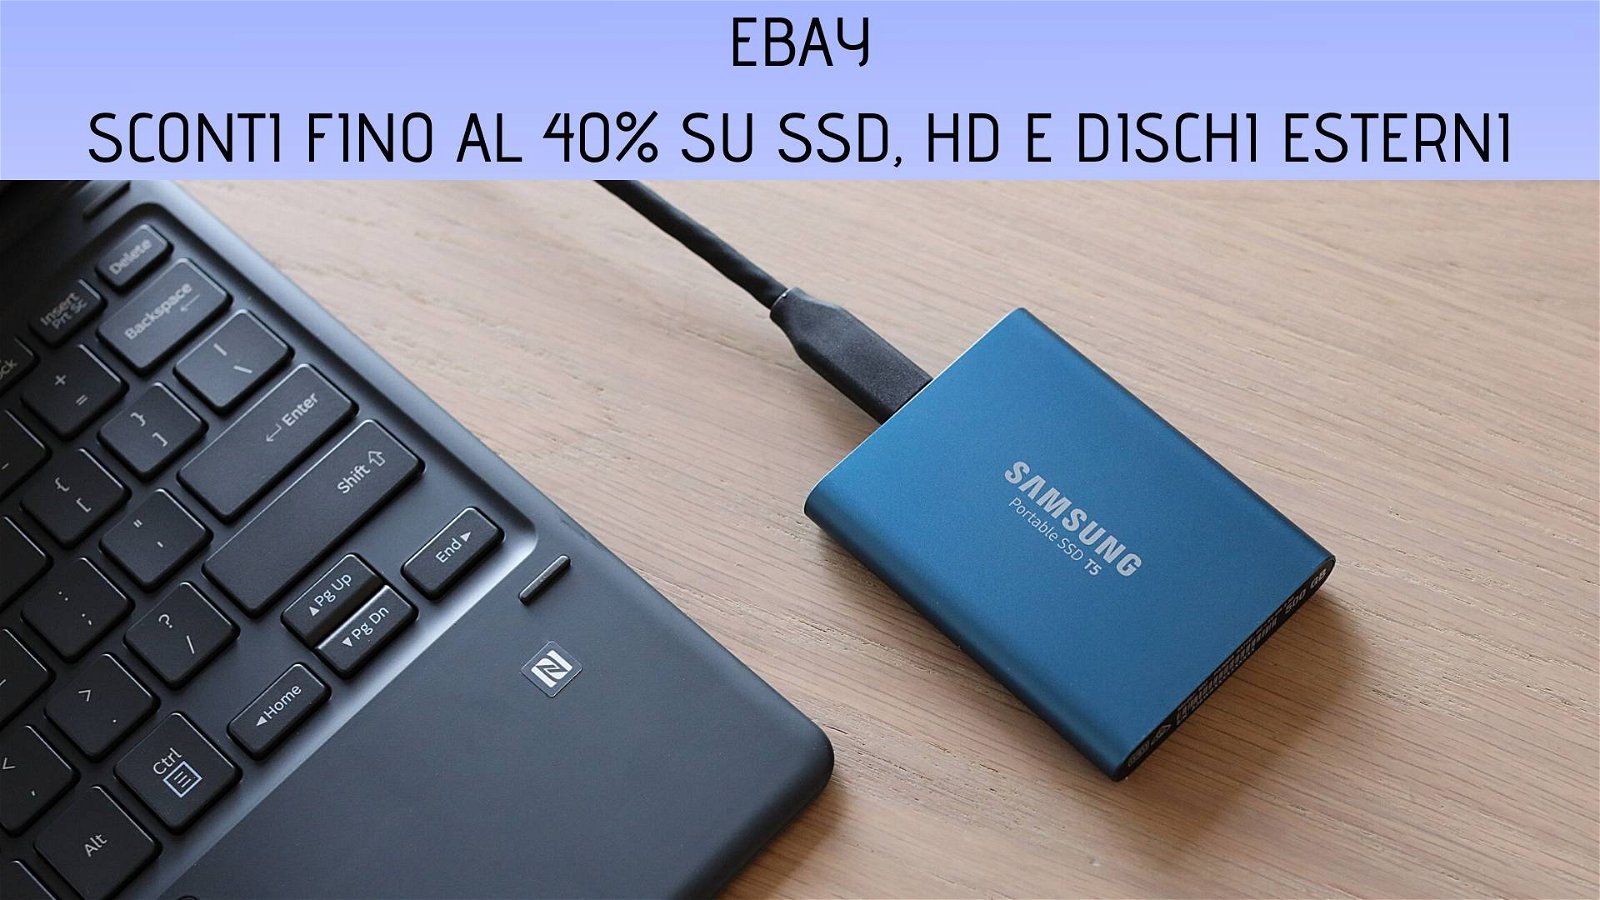 Immagine di Sconti fino al 40% su SSD, HD e dischi esterni da eBay